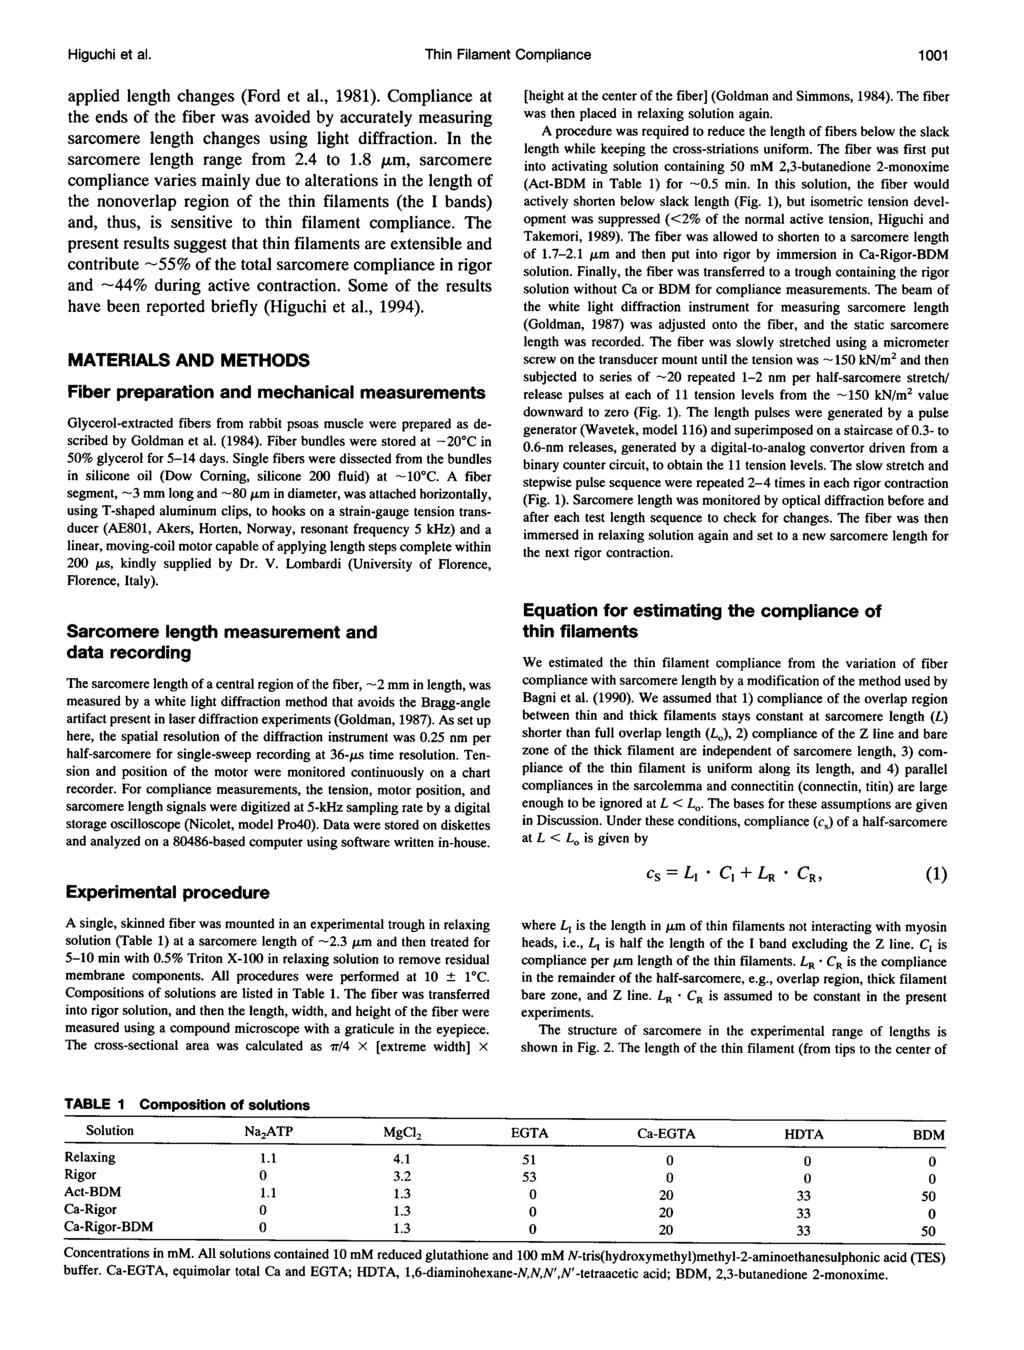 Higuchi et al. Thin Filament Compliance 11 applied length changes (Ford et al., 1981).